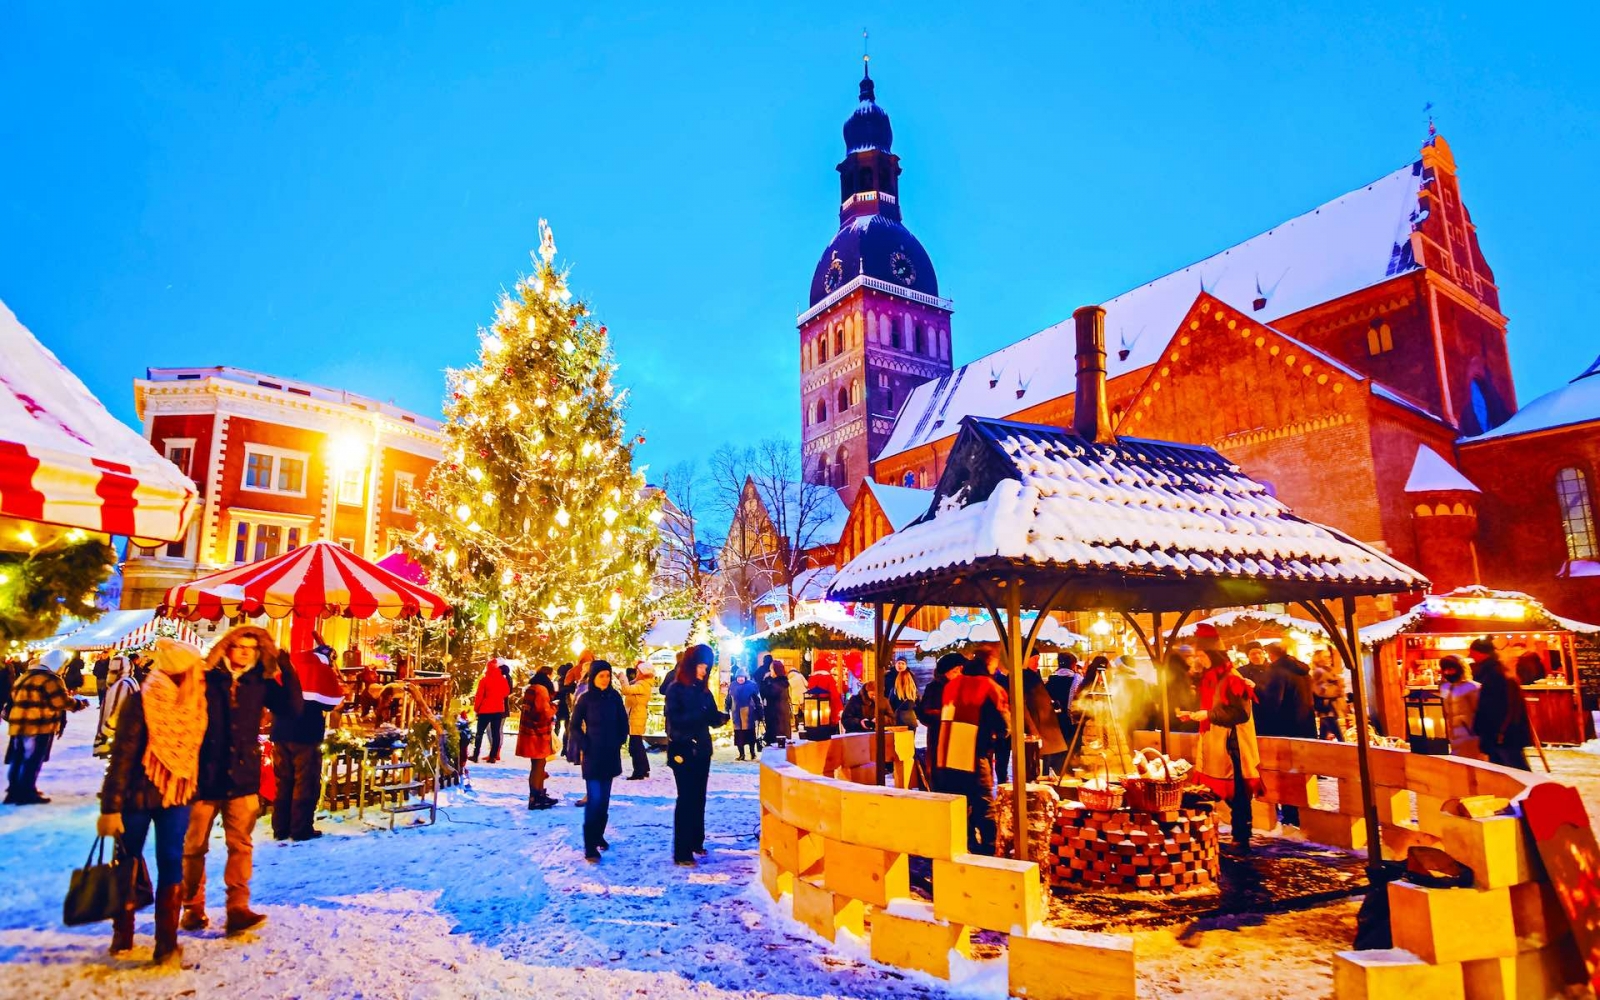 Ночной городской пейзаж с рождественской ярмаркой на площади Домского собора в зимней Риге, Латвия.  Оформление рождественской ярмарки и лавки с поделками